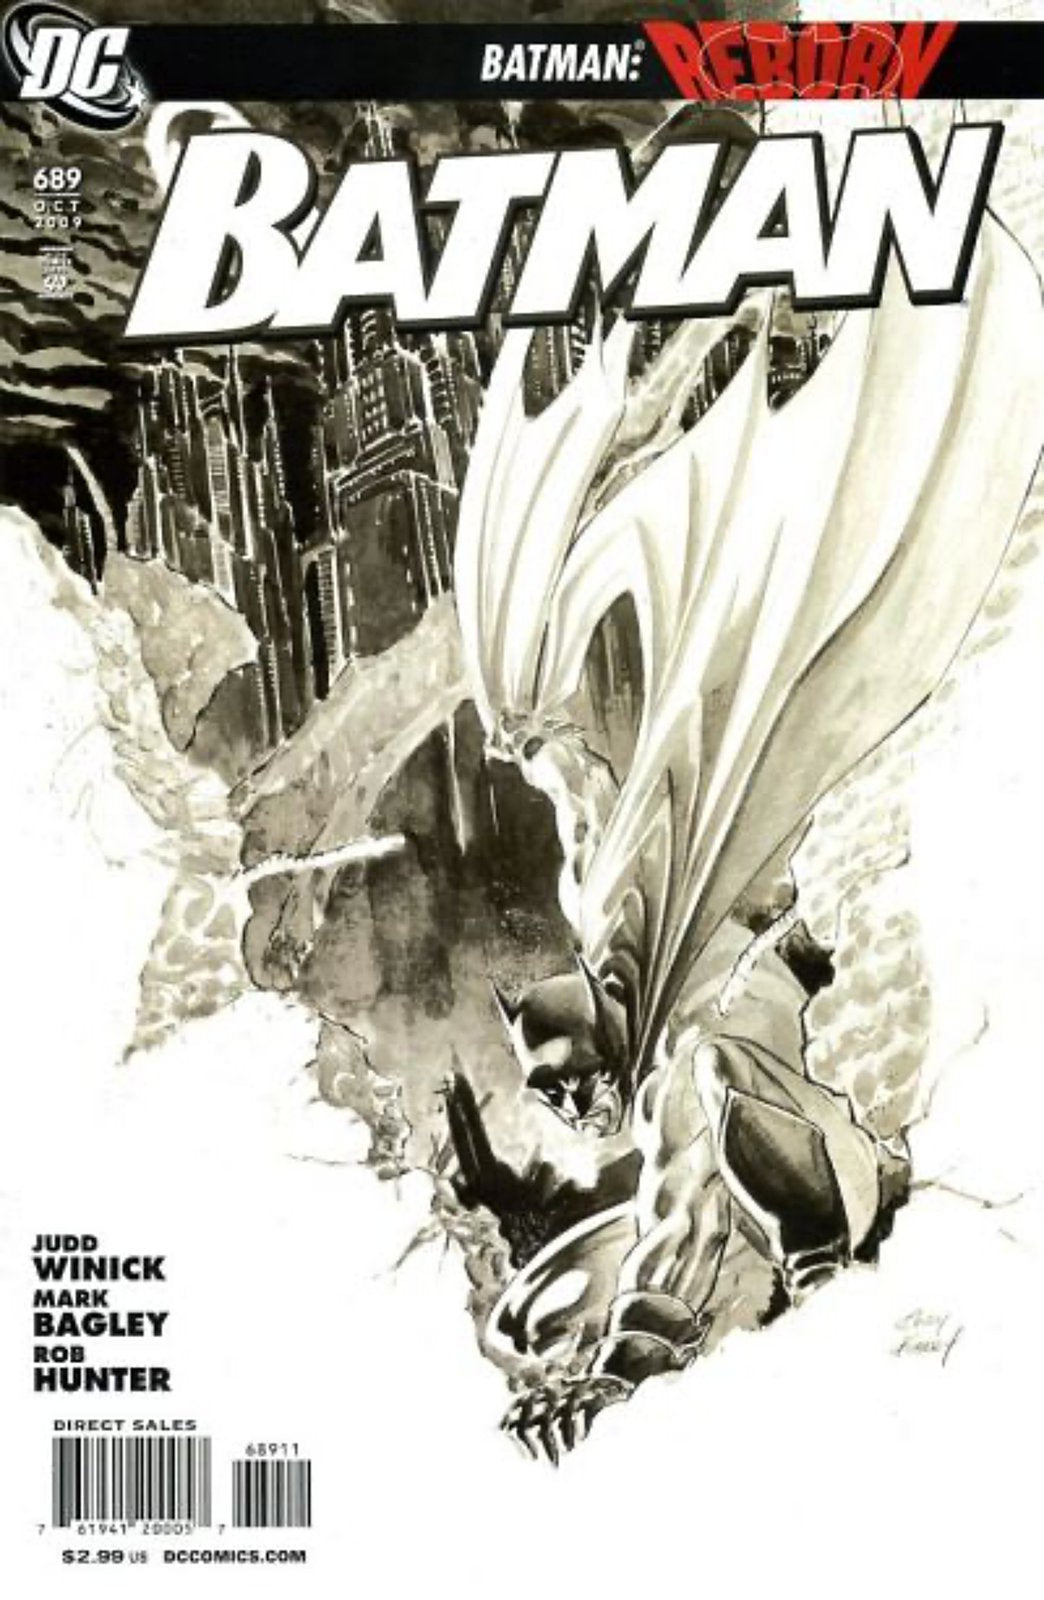 Batman #689 (1940-2011) DC Comics